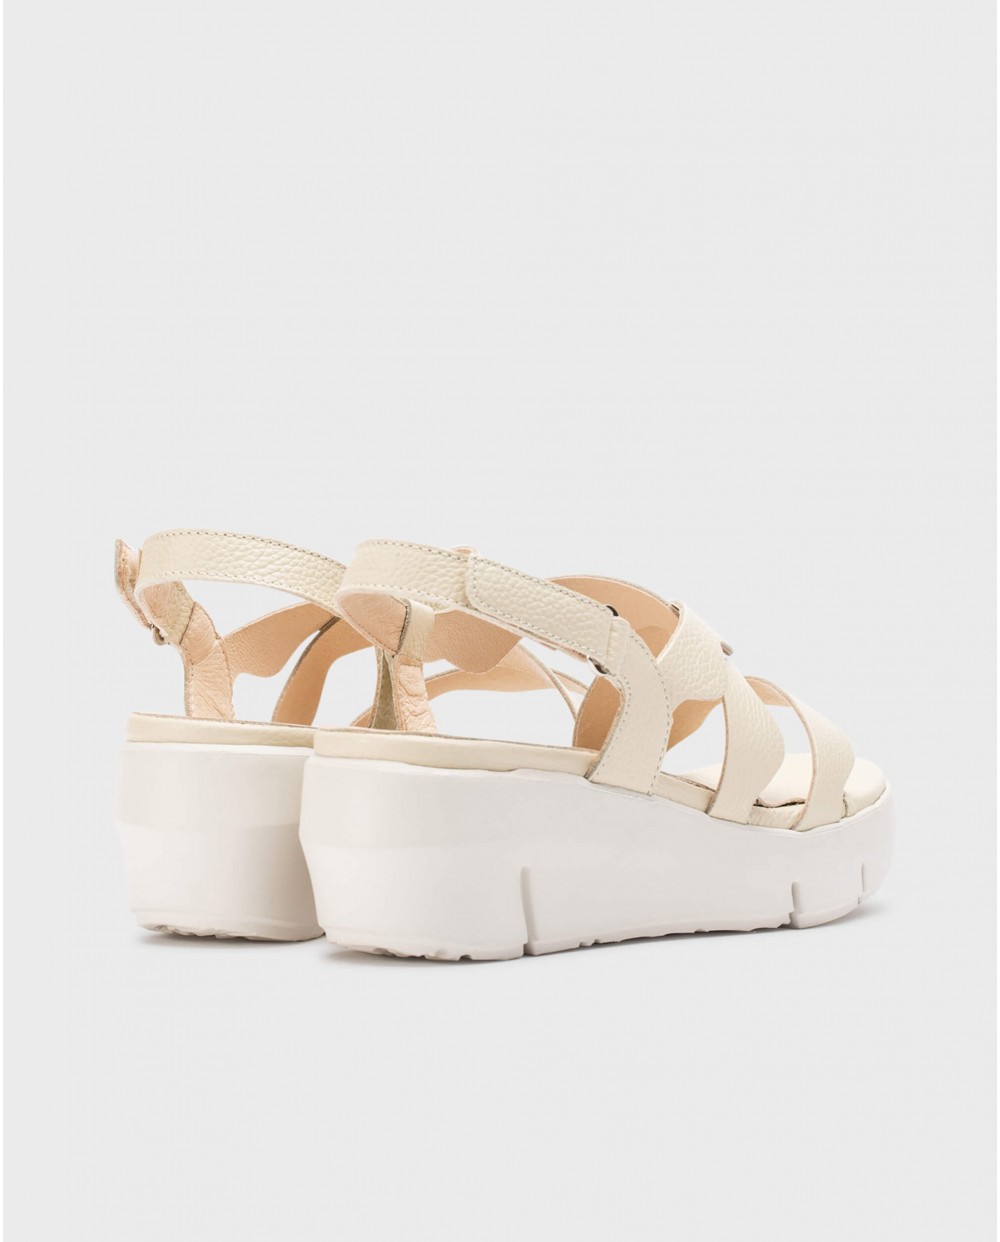 Cream Colorado sandals